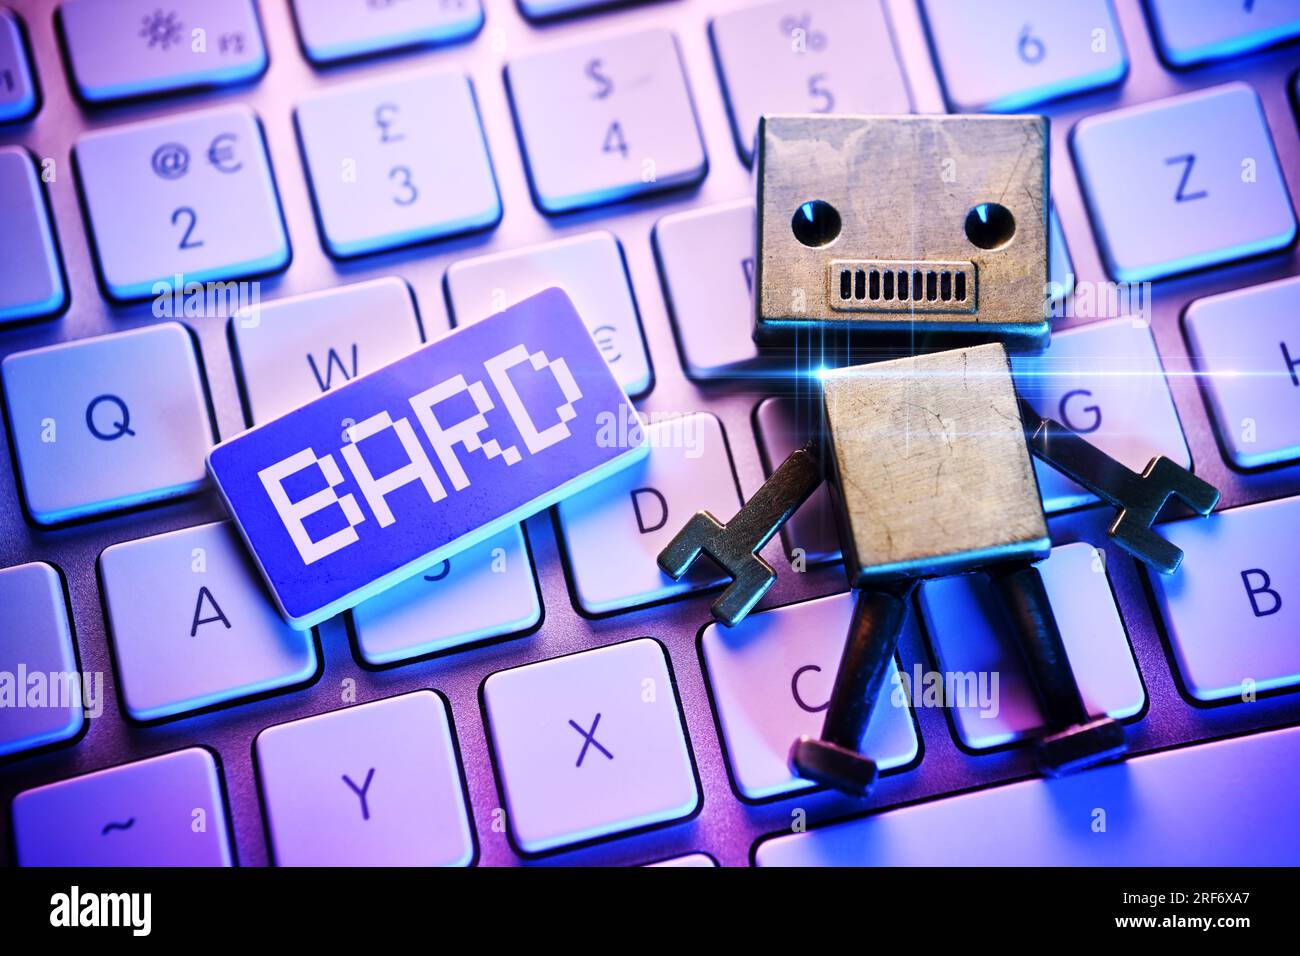 FOTOMONTAGE, Roboterfigur auf einer Computertastatur und Taste mit Aufschrift Bard, Google-KI Stock Photo